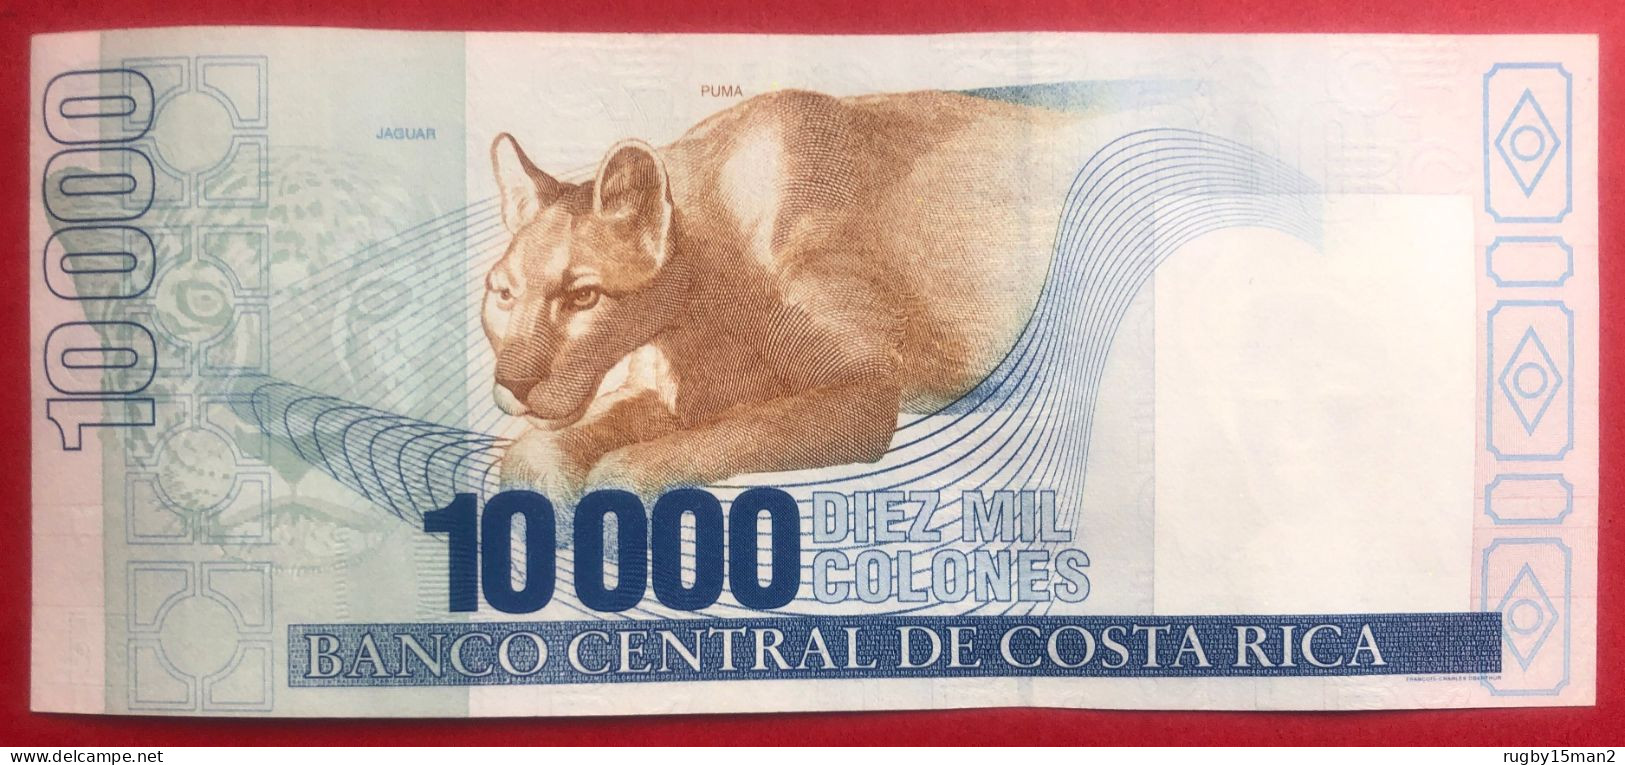 N°45 BILLET DE BANQUE COSTA RICA 10 000 COLONES 2002 - Costa Rica